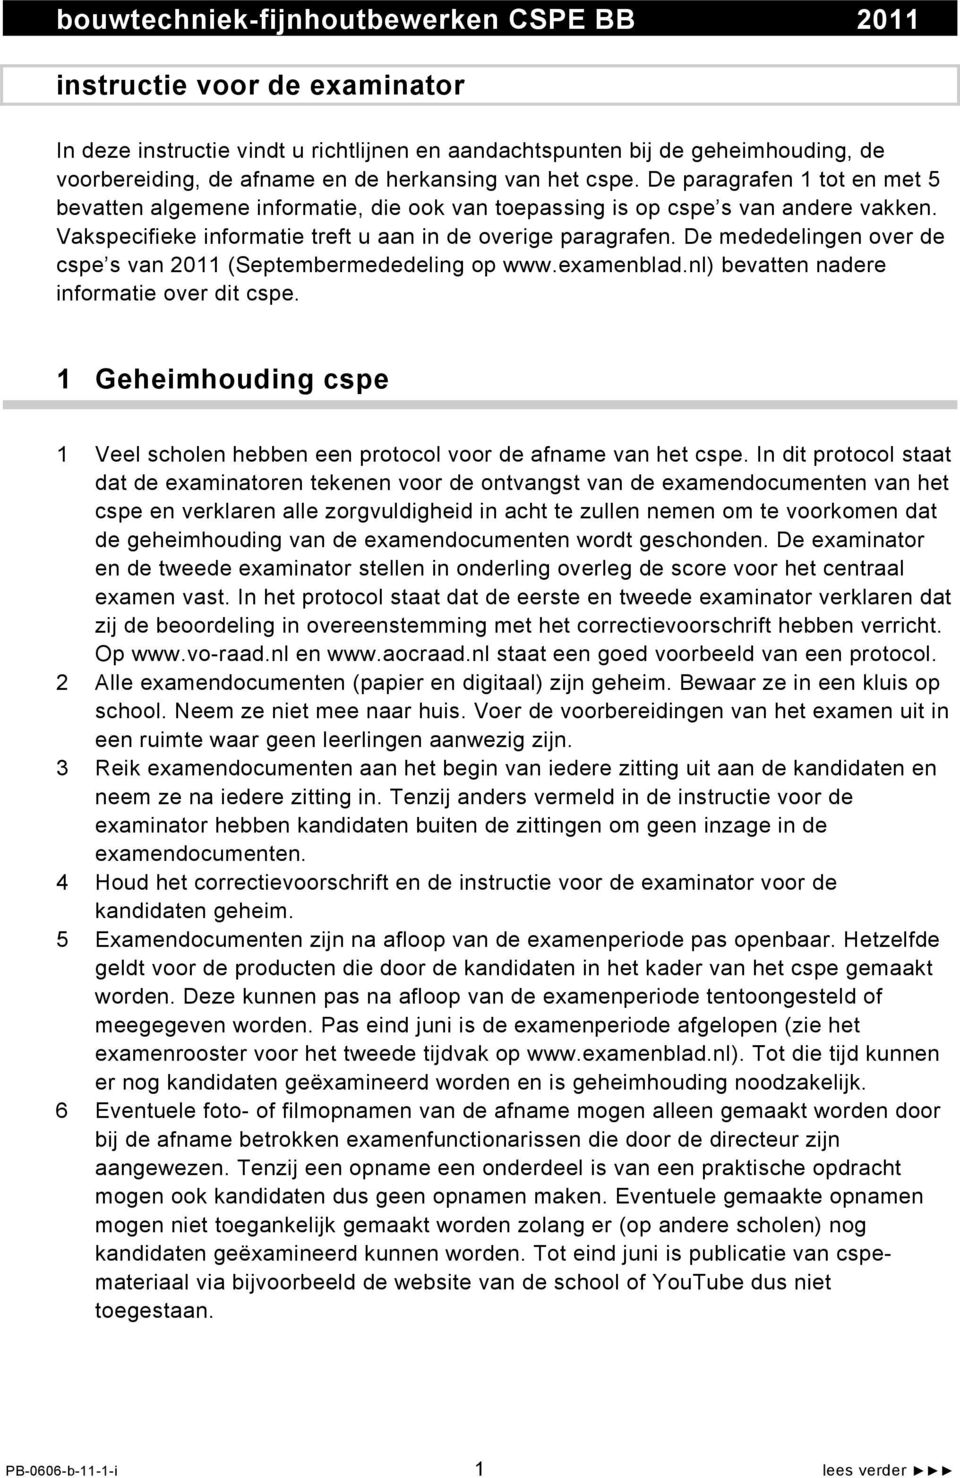 De mededelingen over de cspe s van 2011 (Septembermededeling op www.examenblad.nl) bevatten nadere informatie over dit cspe.